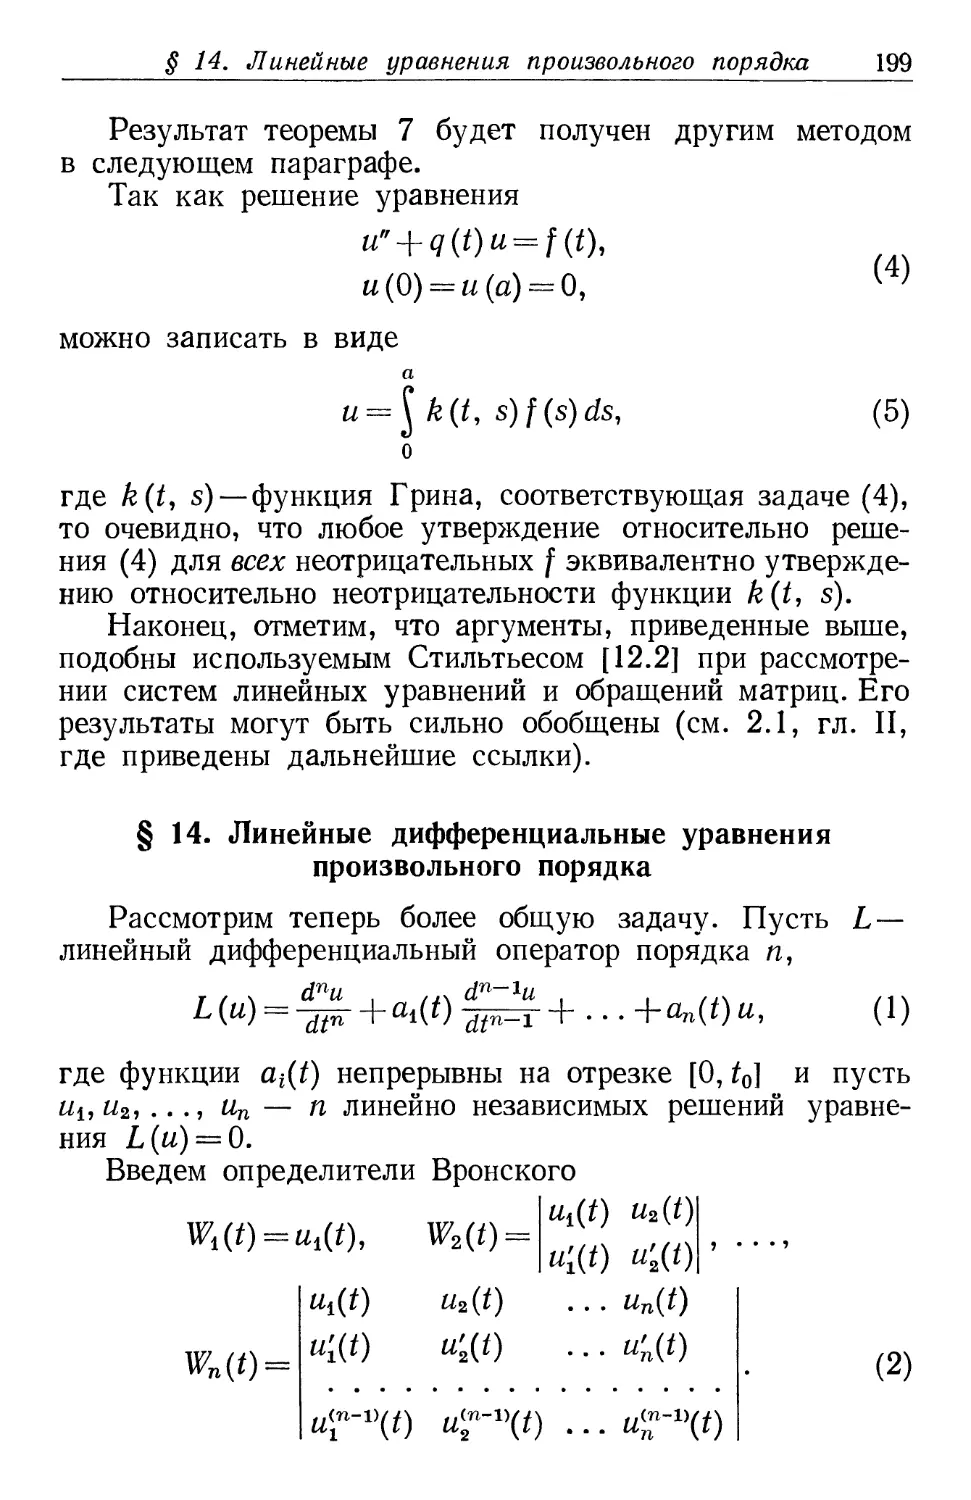 § 14. Линейные дифференциальные уравнения произвольного порядка